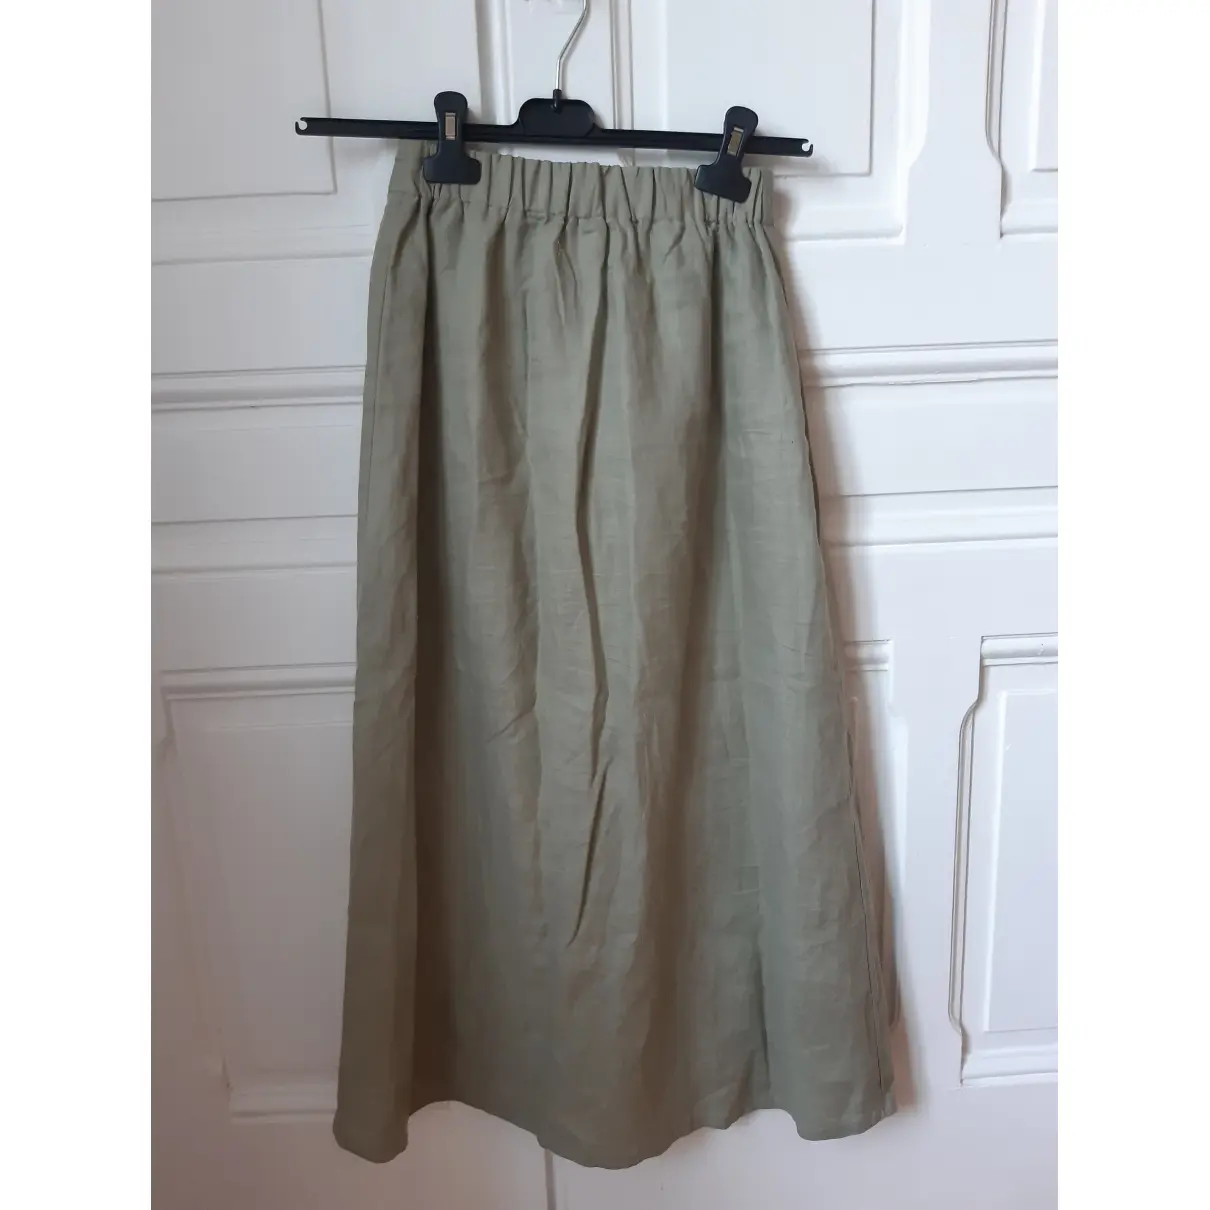 Buy Posse Linen mid-length skirt online